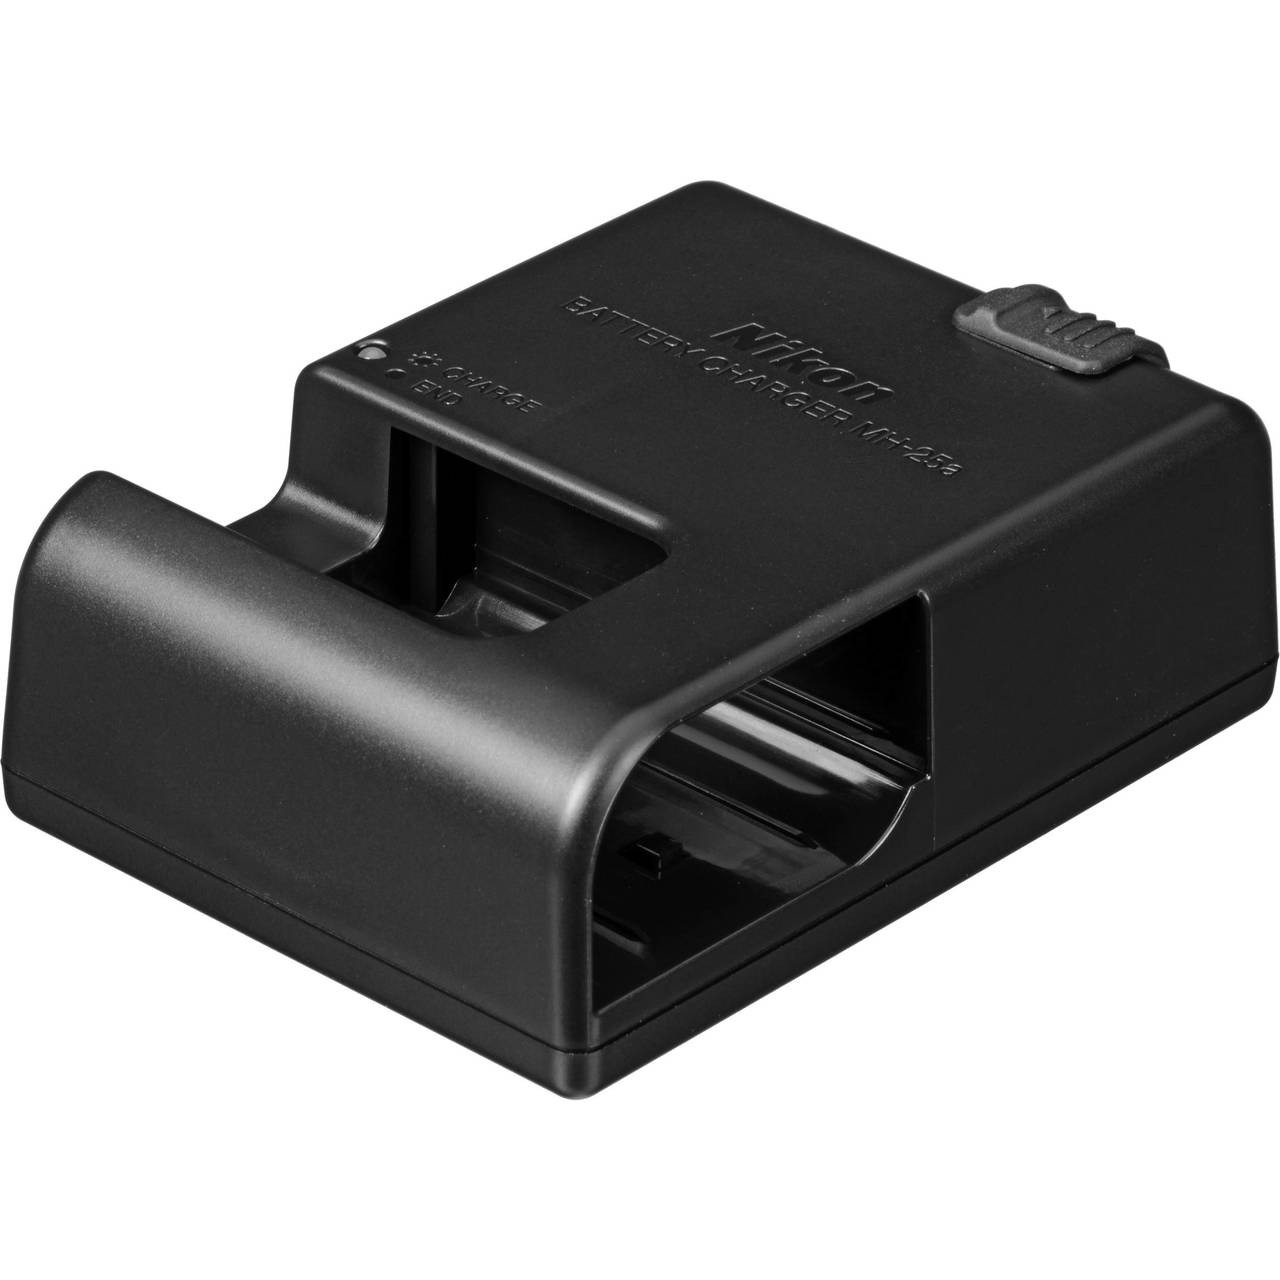 skraber Diverse varer appetit Battery /USB- Charger Kit for Nikon EN-EL15b at Acephoto.net